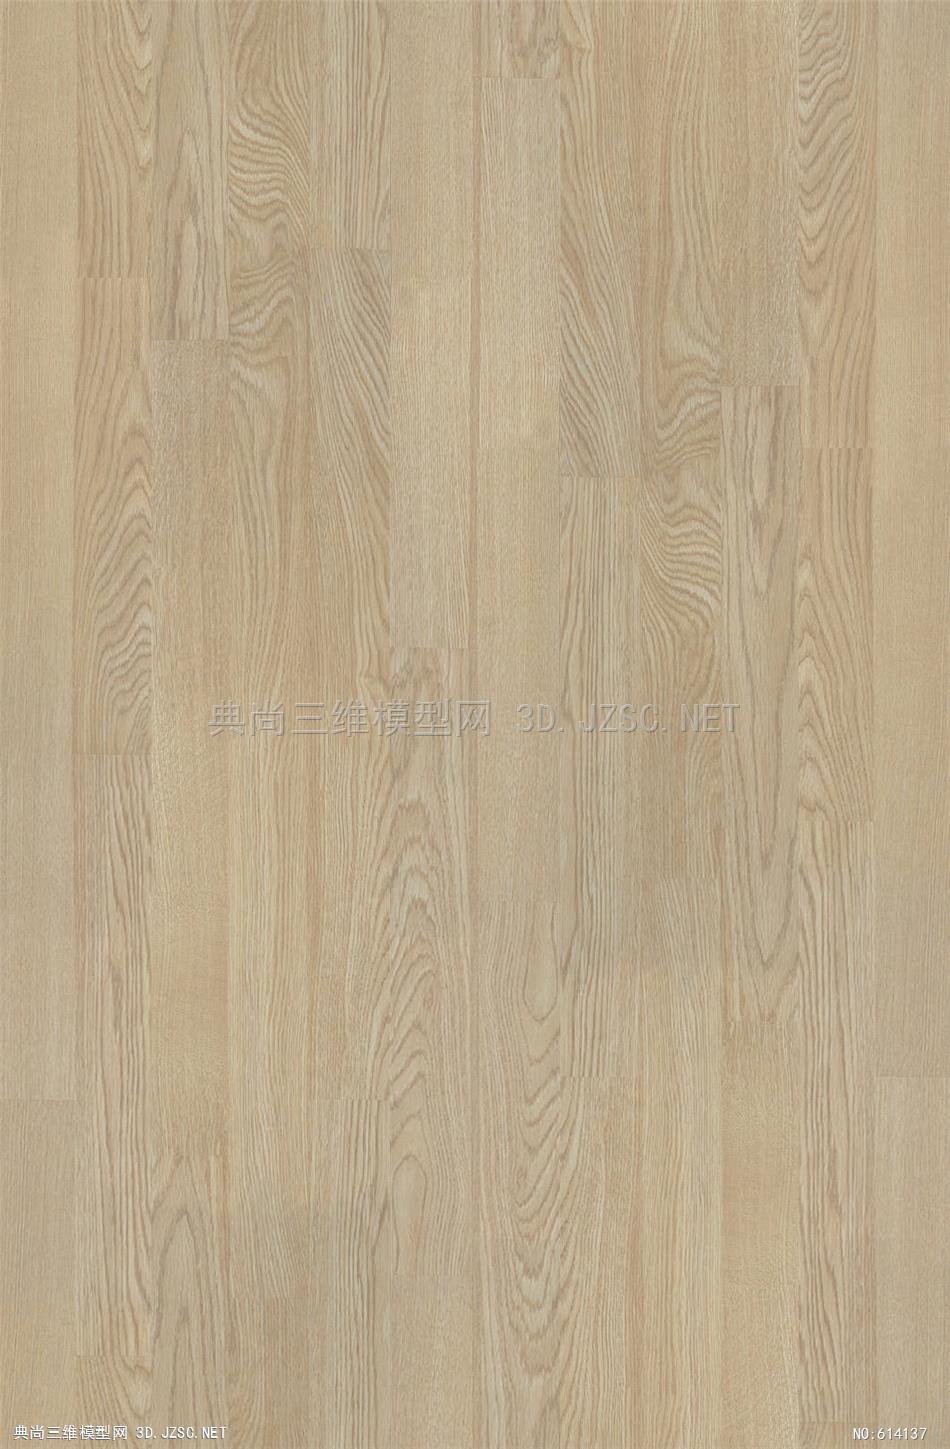 木地板 木纹 木材  高清材质贴图 (66)